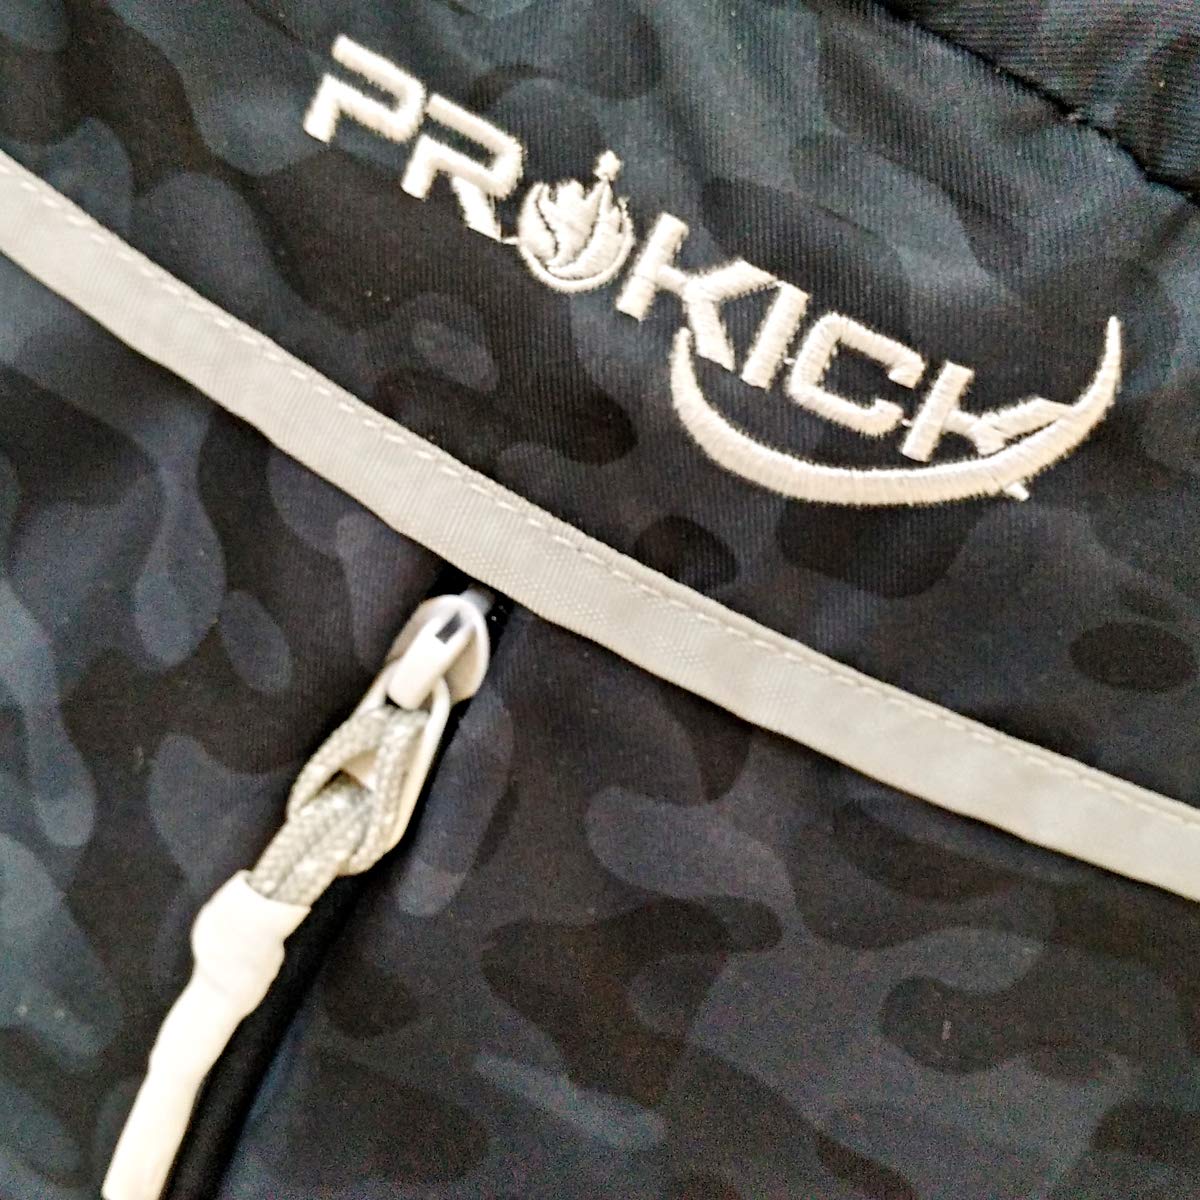 Prokick 30L Waterproof Casual Backpack | School Bag - Camo - Best Price online Prokicksports.com